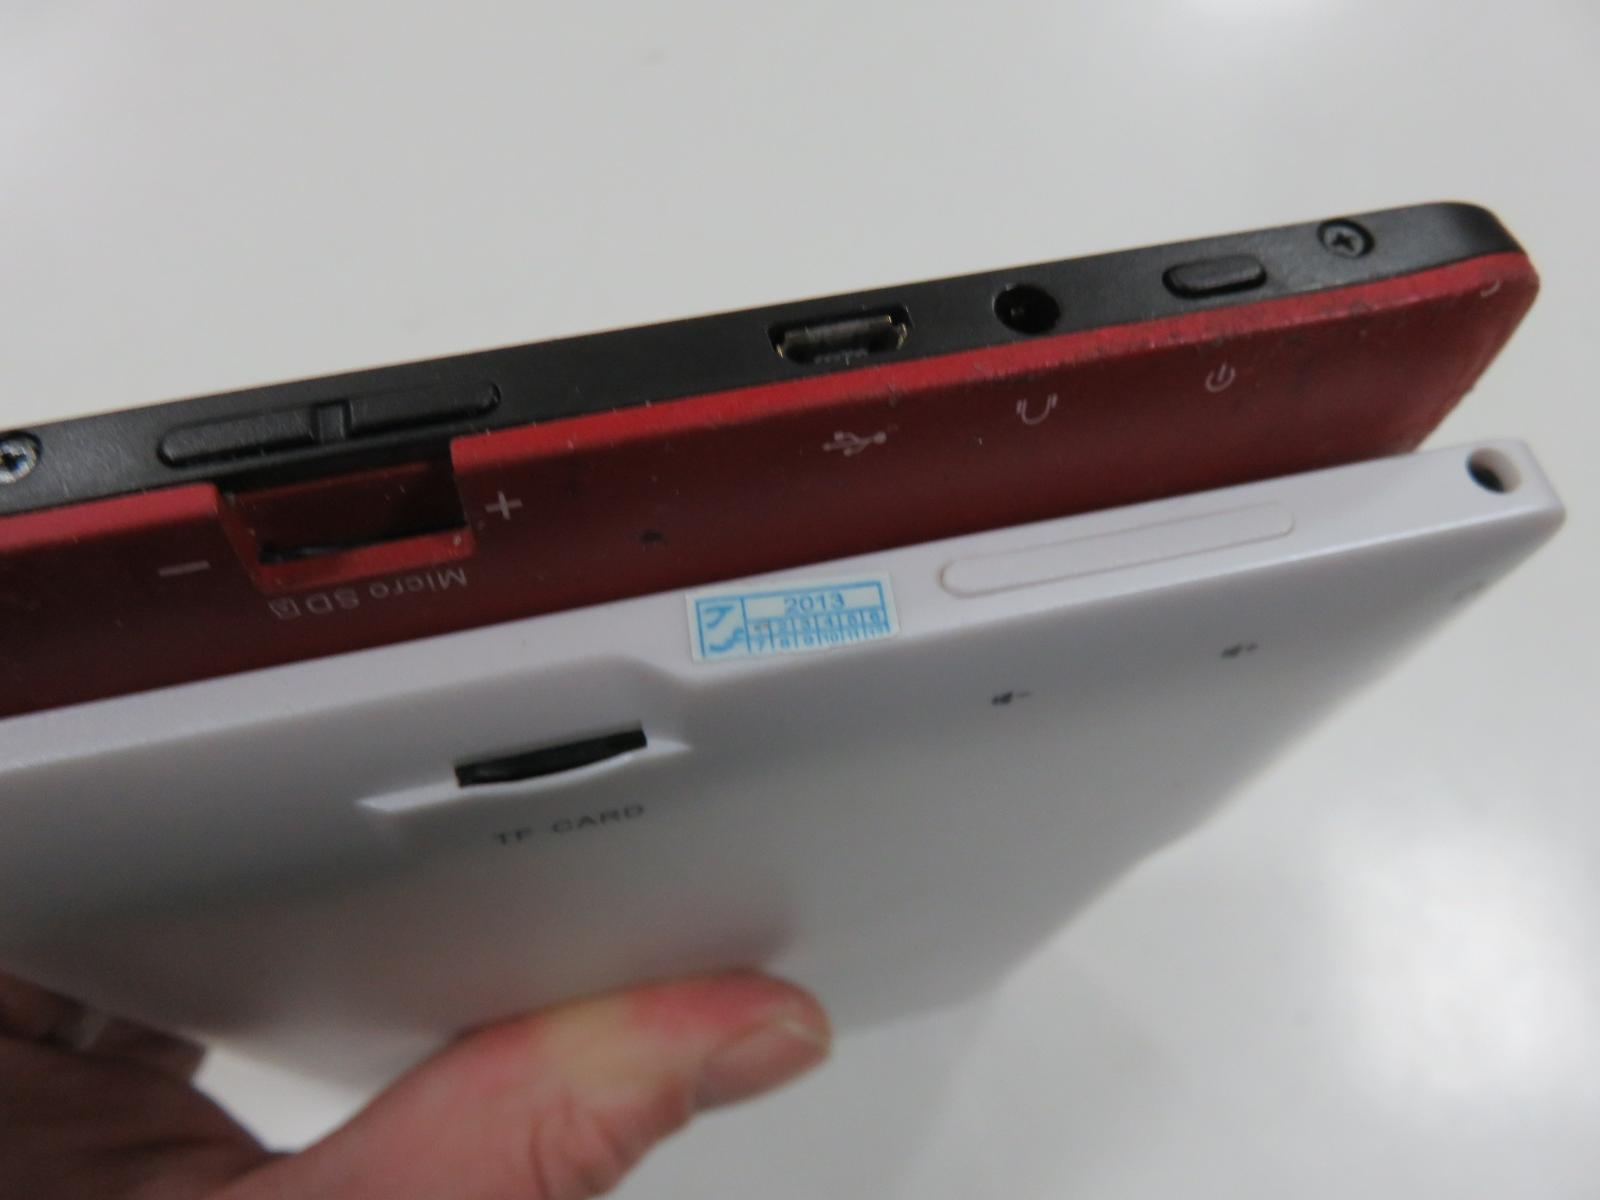 2 x tablet - Prestigio - druhý bez názvu - špatná baterie - funkční    - Počítače a hry